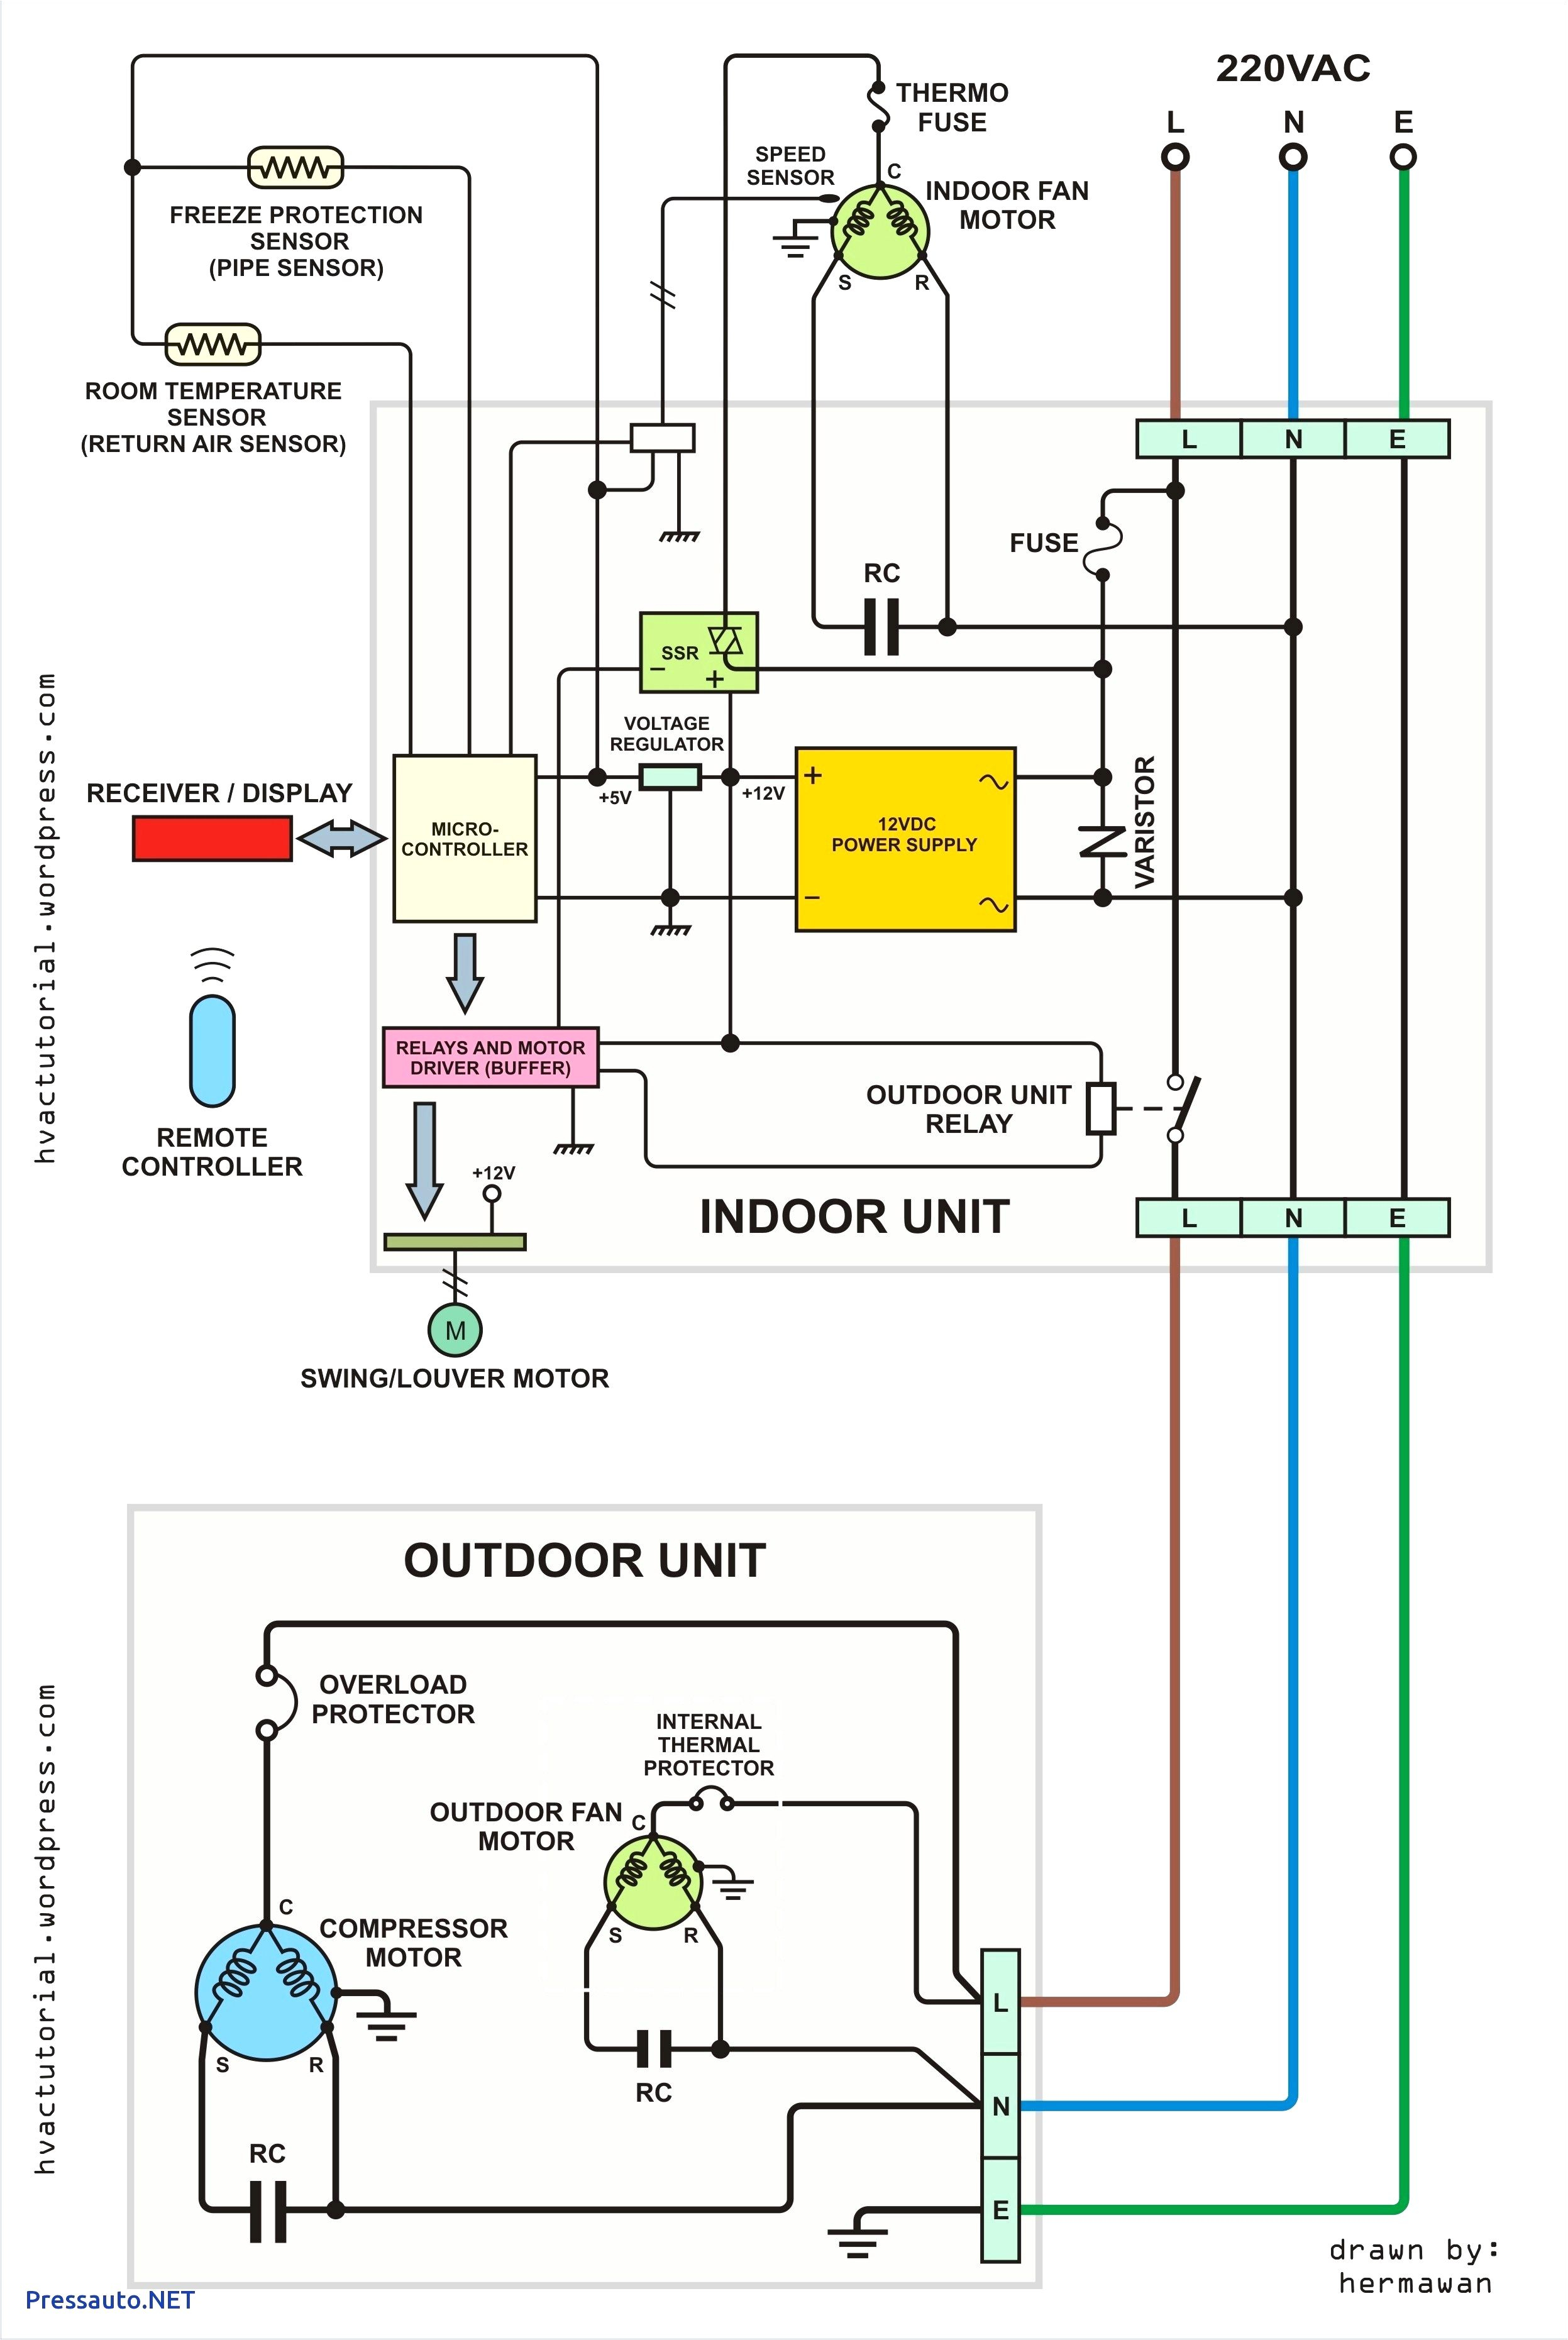 2013 jayco 1007 plumbing diagram jayco rv owners forum wiring jayco rv satellite wiring diagram jayco rv wiring diagrams